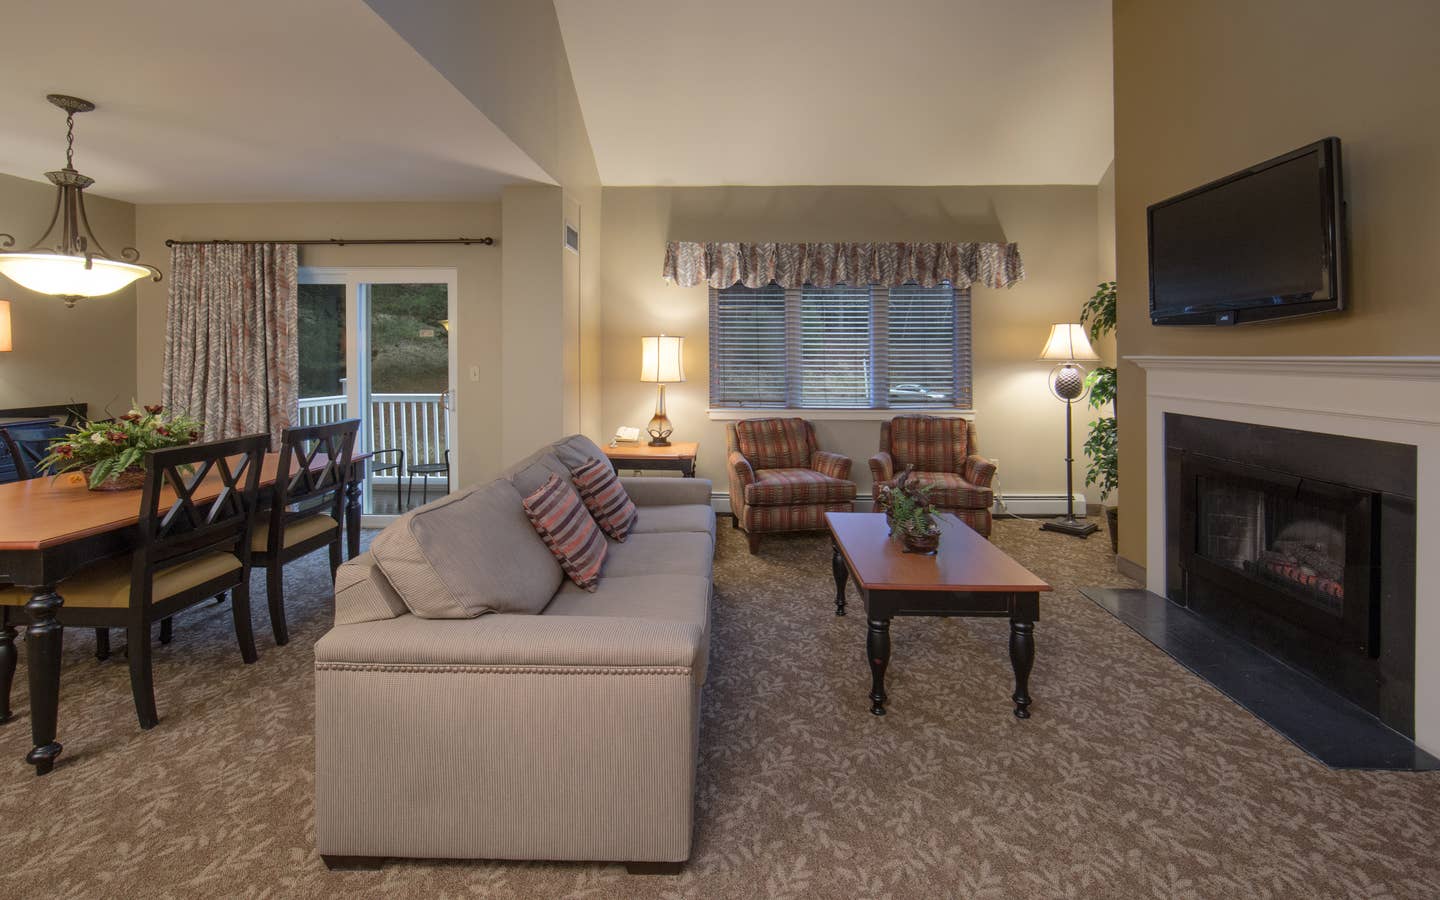 Living room in a three-bedroom villa at Mount Ascutney Resort in Brownsville, VT